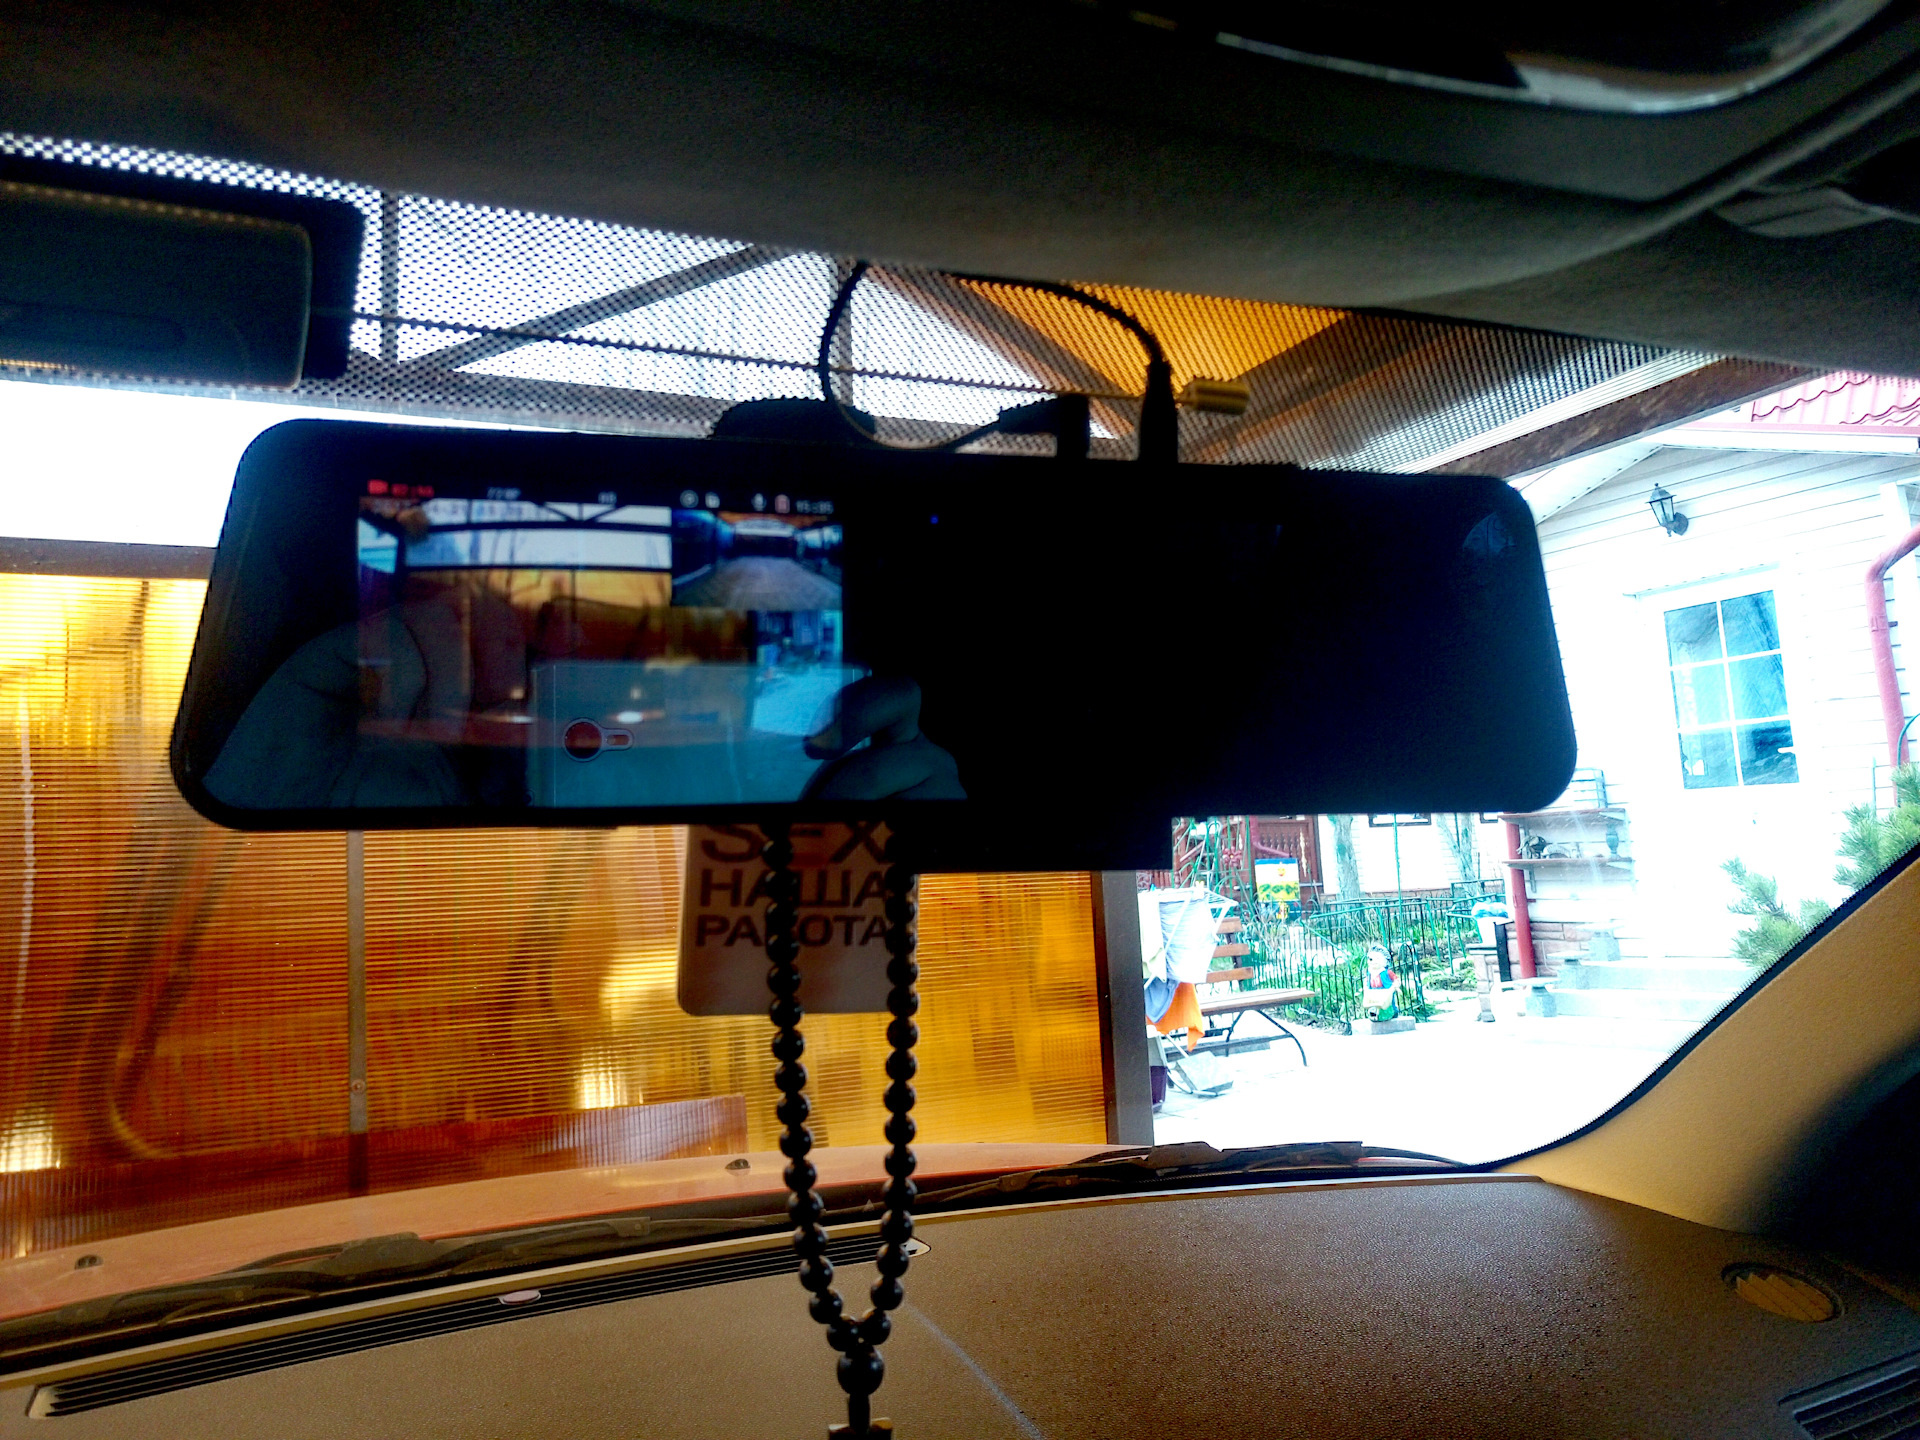 Настройка зеркала видеорегистратора с камерой